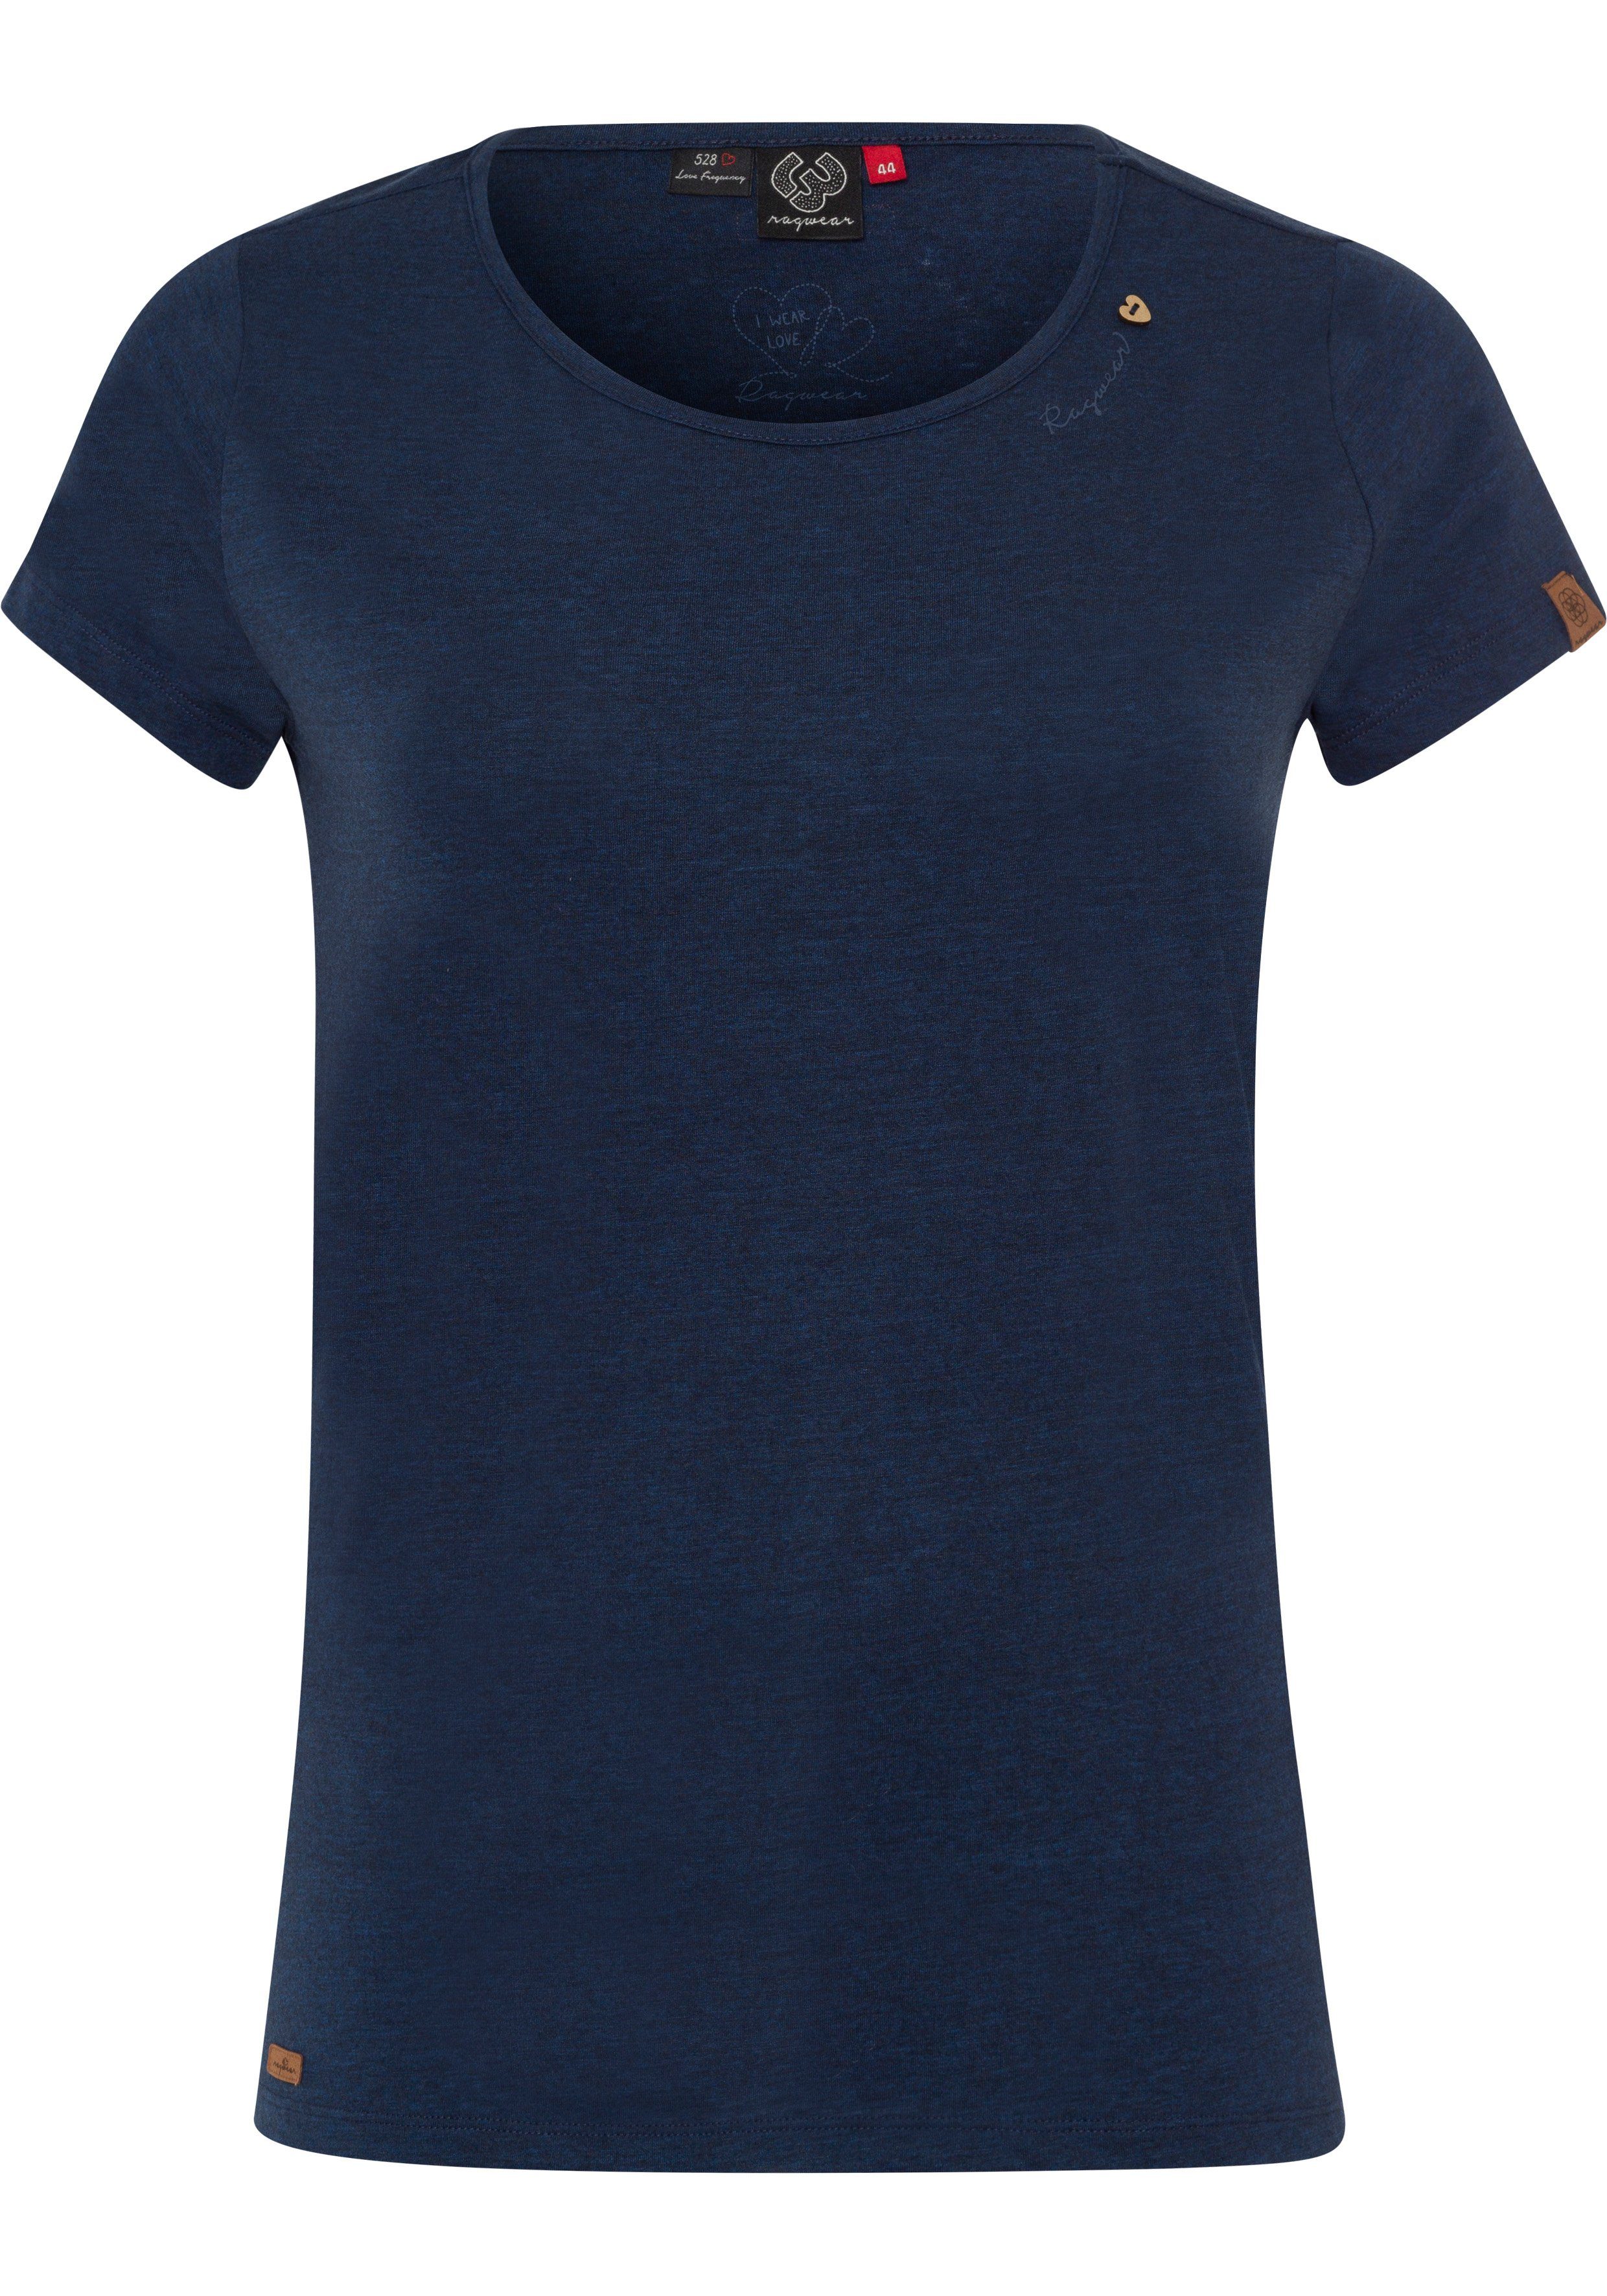 Ragwear Plus T-Shirt 2028 Logoschriftzug PLUS Holzoptik natürlicher navy Zierknopf-Applikation in und mit MINT A